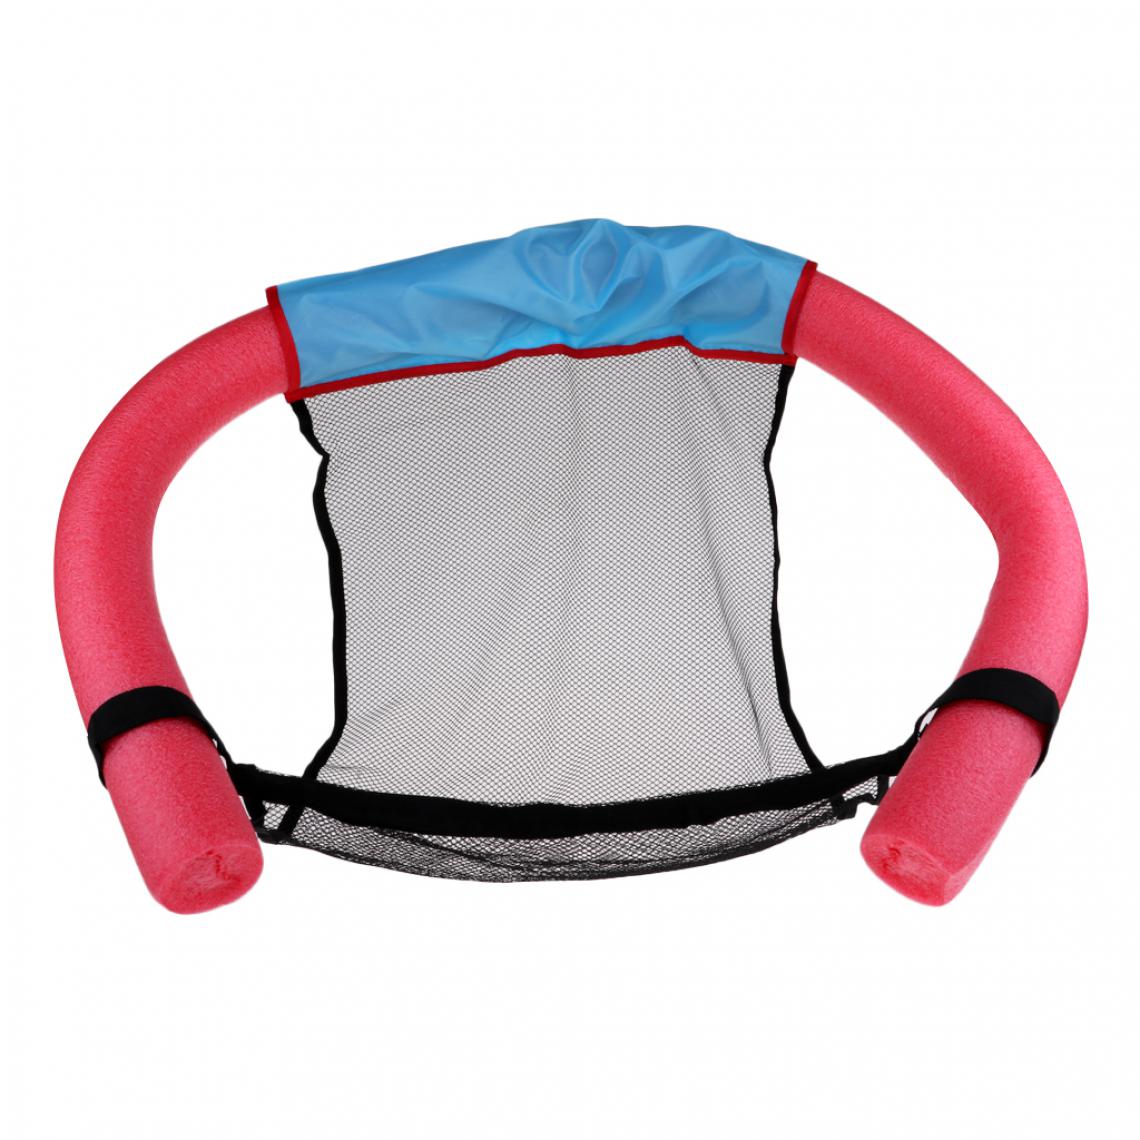 marque generique - piscine flottante noodle sling mesh chaise flottante siège de natation l'eau jouets rouge - Piscines enfants